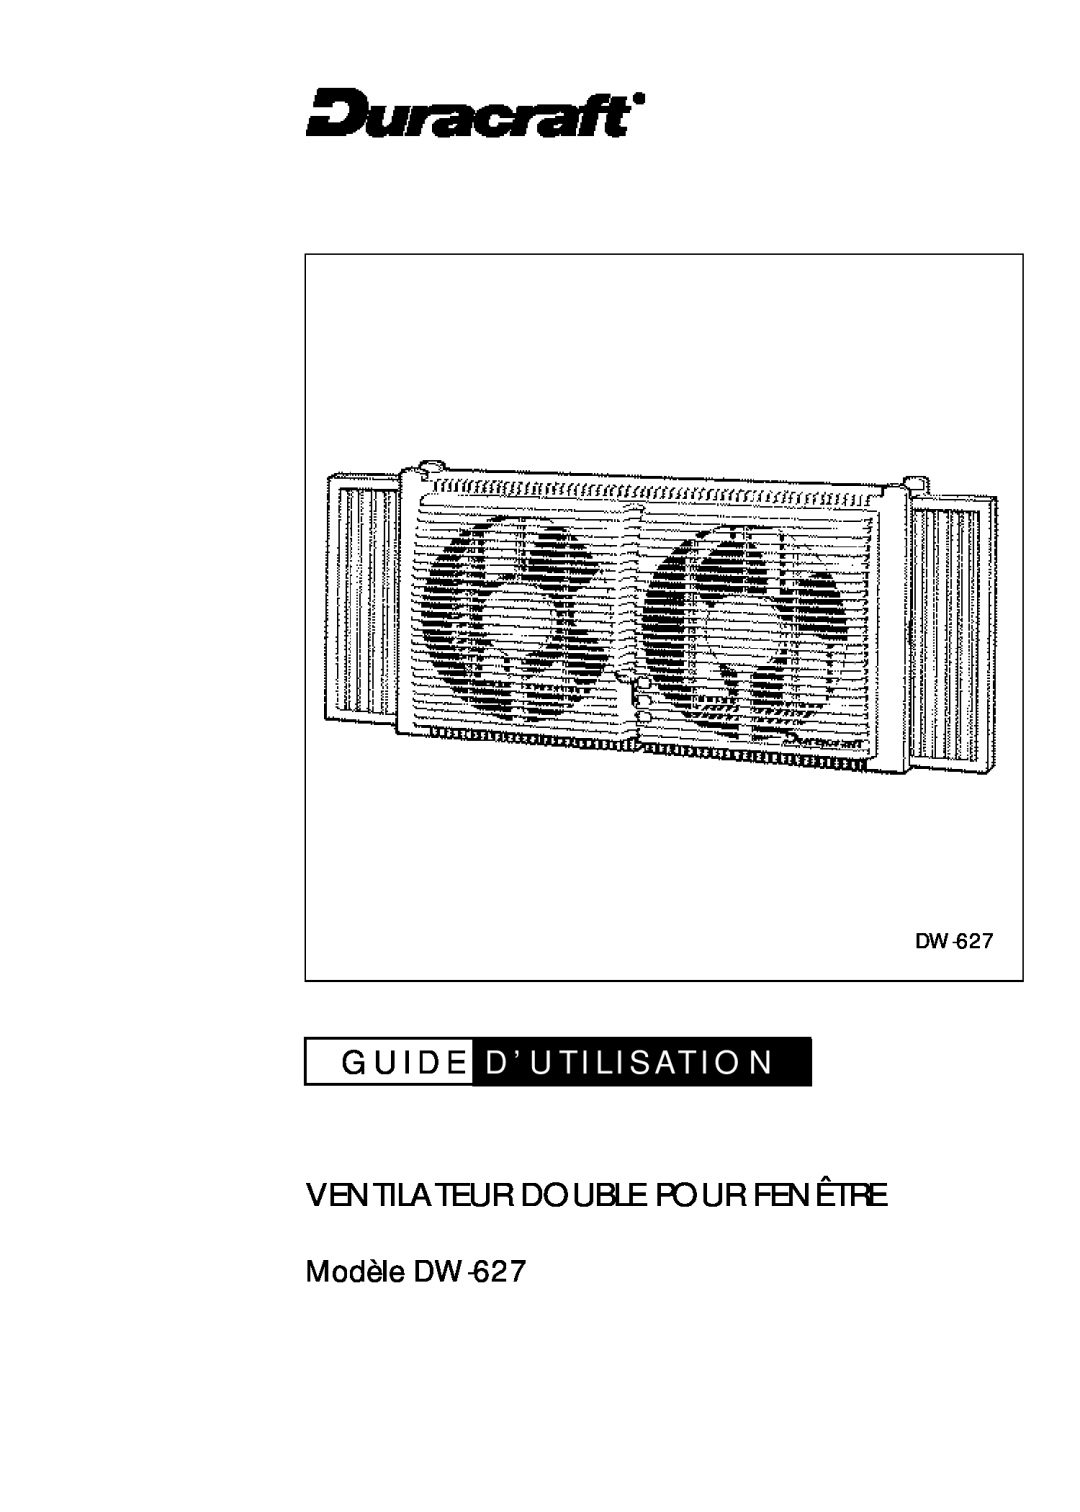 Duracraft DW-627 owner manual G U I D E D ’ U T I L I S At I O N, Ventilateur Double Pour Fenêtre 